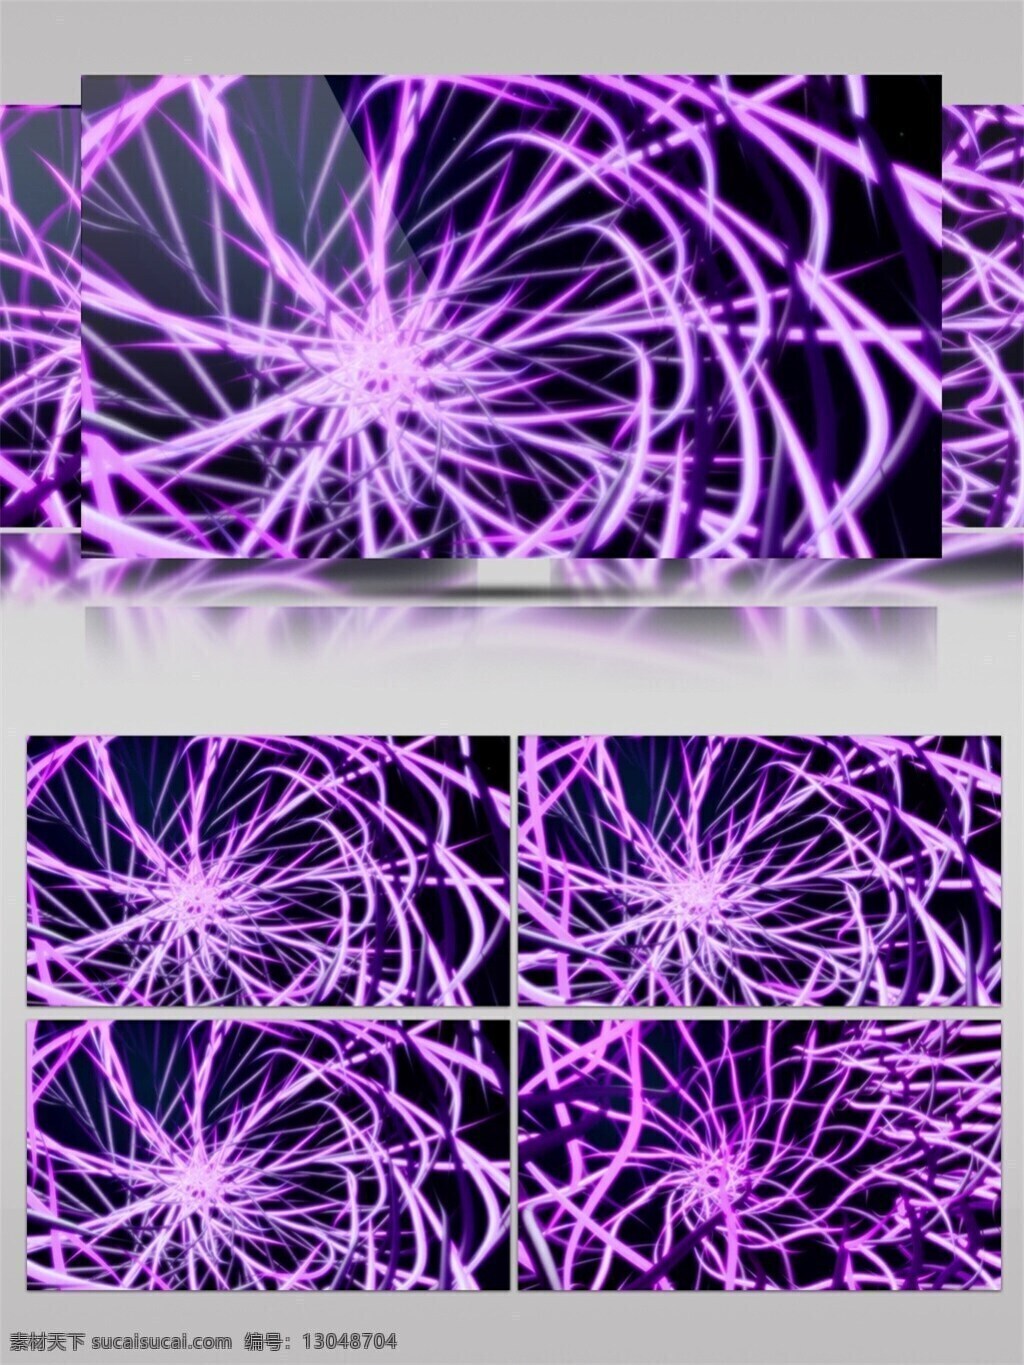 紫色 神经 光束 视频 高清素材 光景素材 光芒穿梭 光特效素材 脉冲 前进隧道 唯美素材